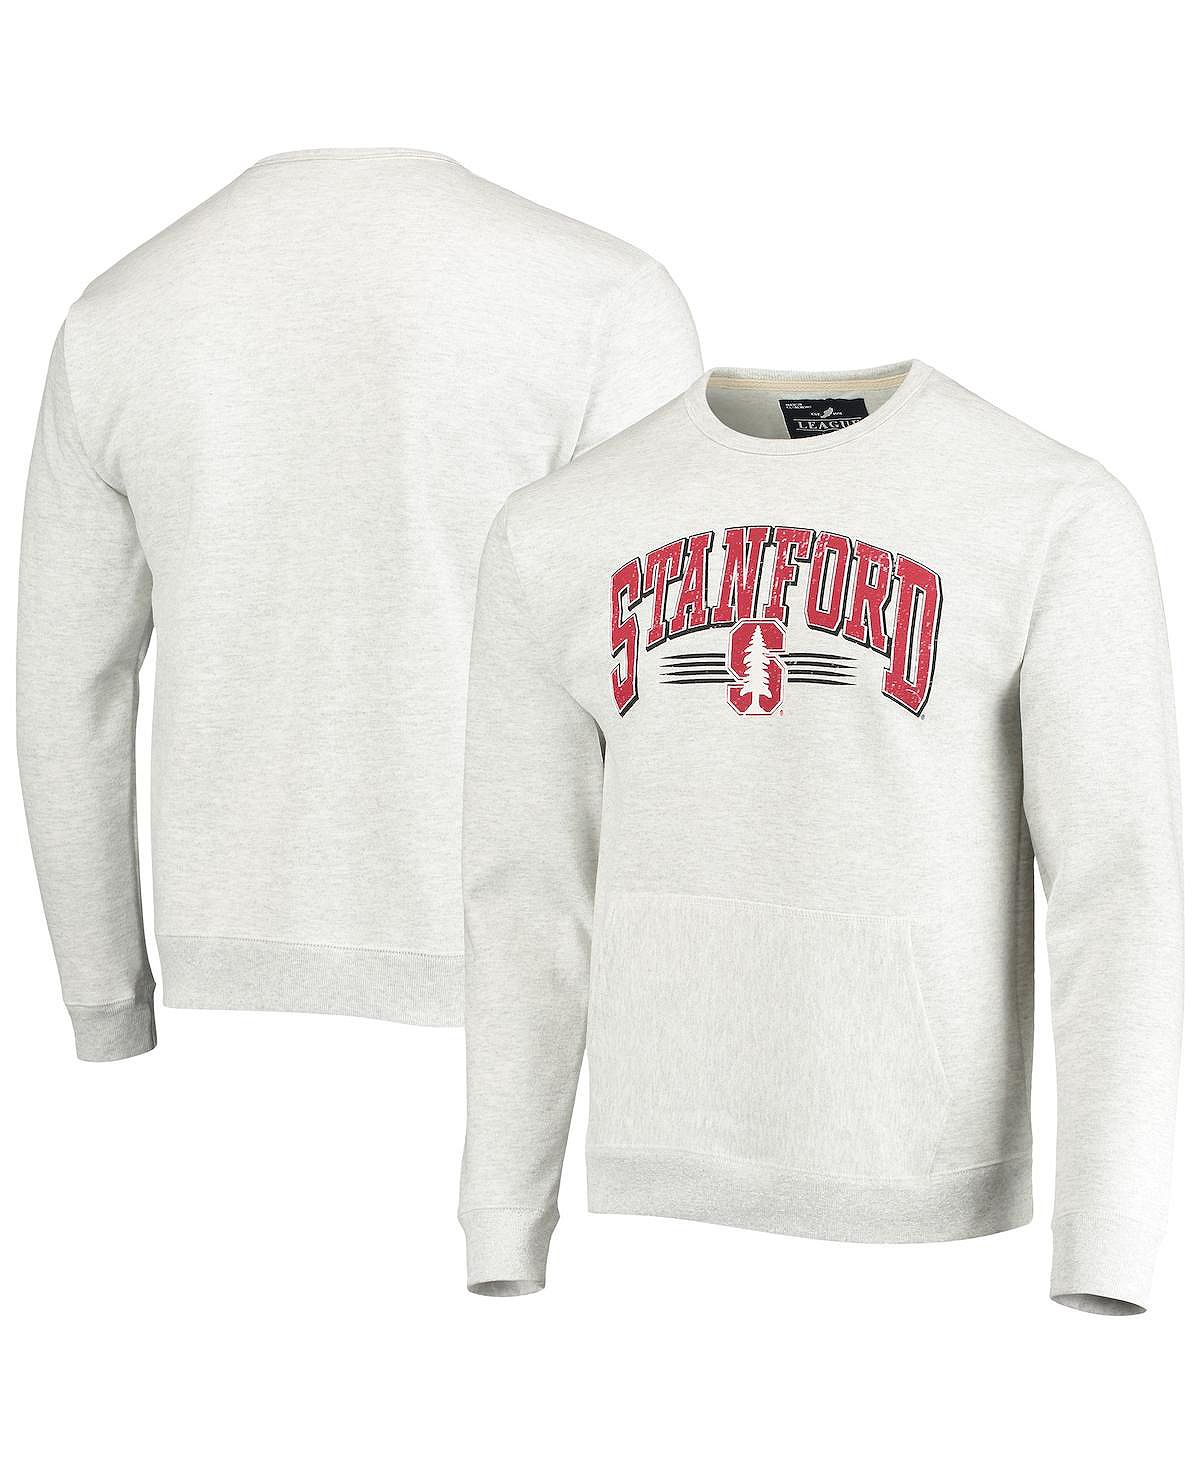 Мужской серый пуловер с карманами Stanford Cardinal Upperclassman с принтом меланжевого цвета League Collegiate Wear